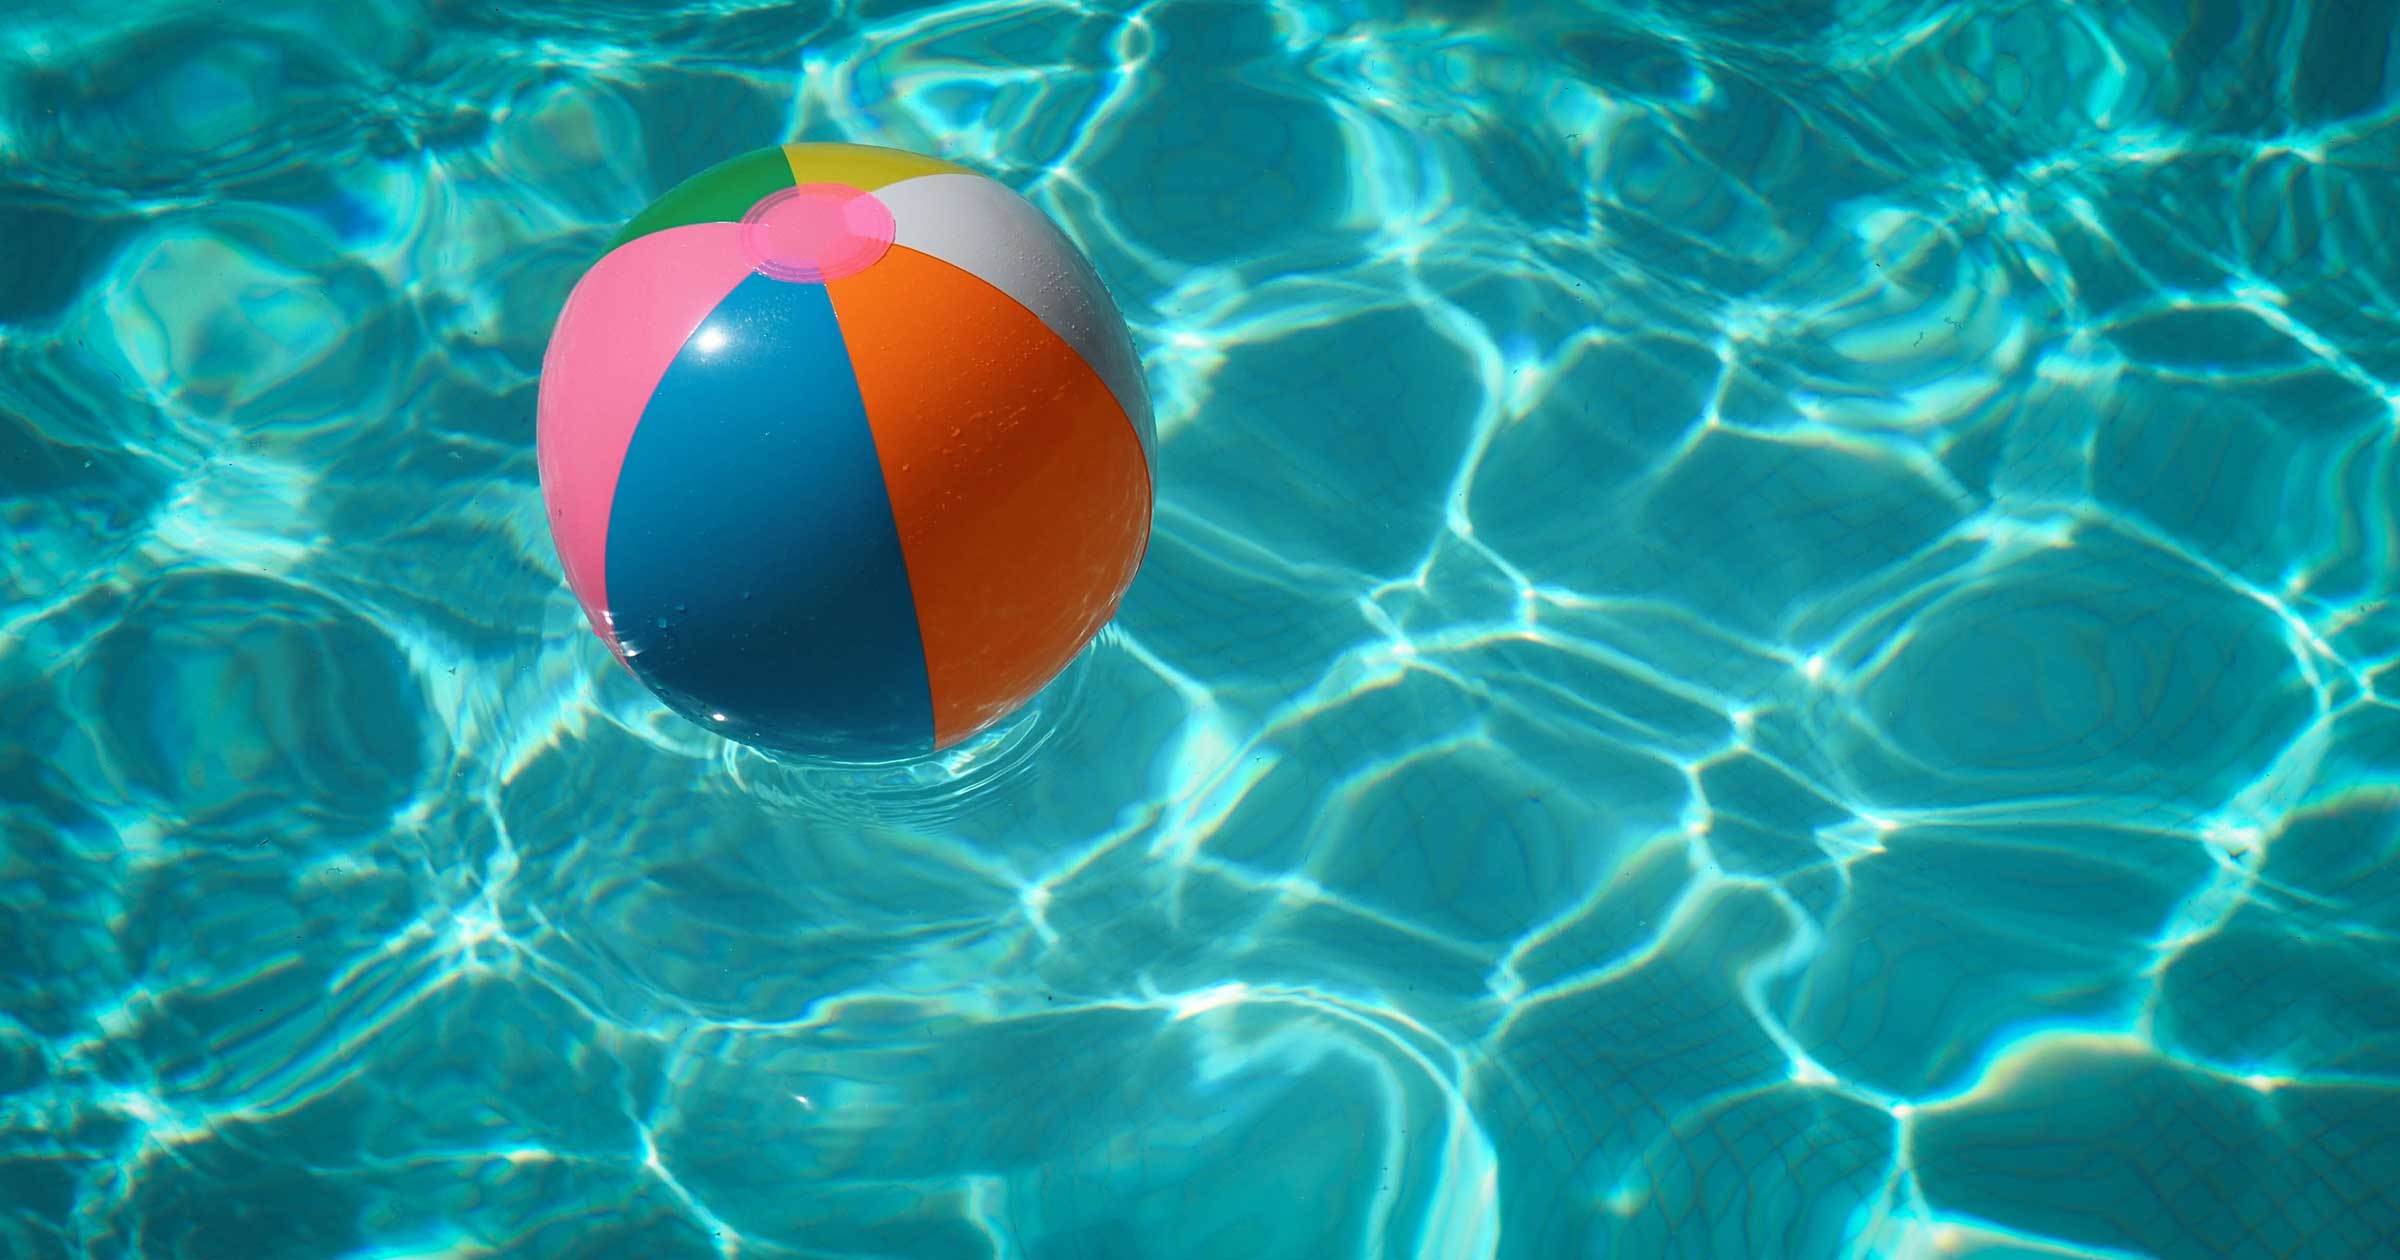 beach-ball-in-a-pool